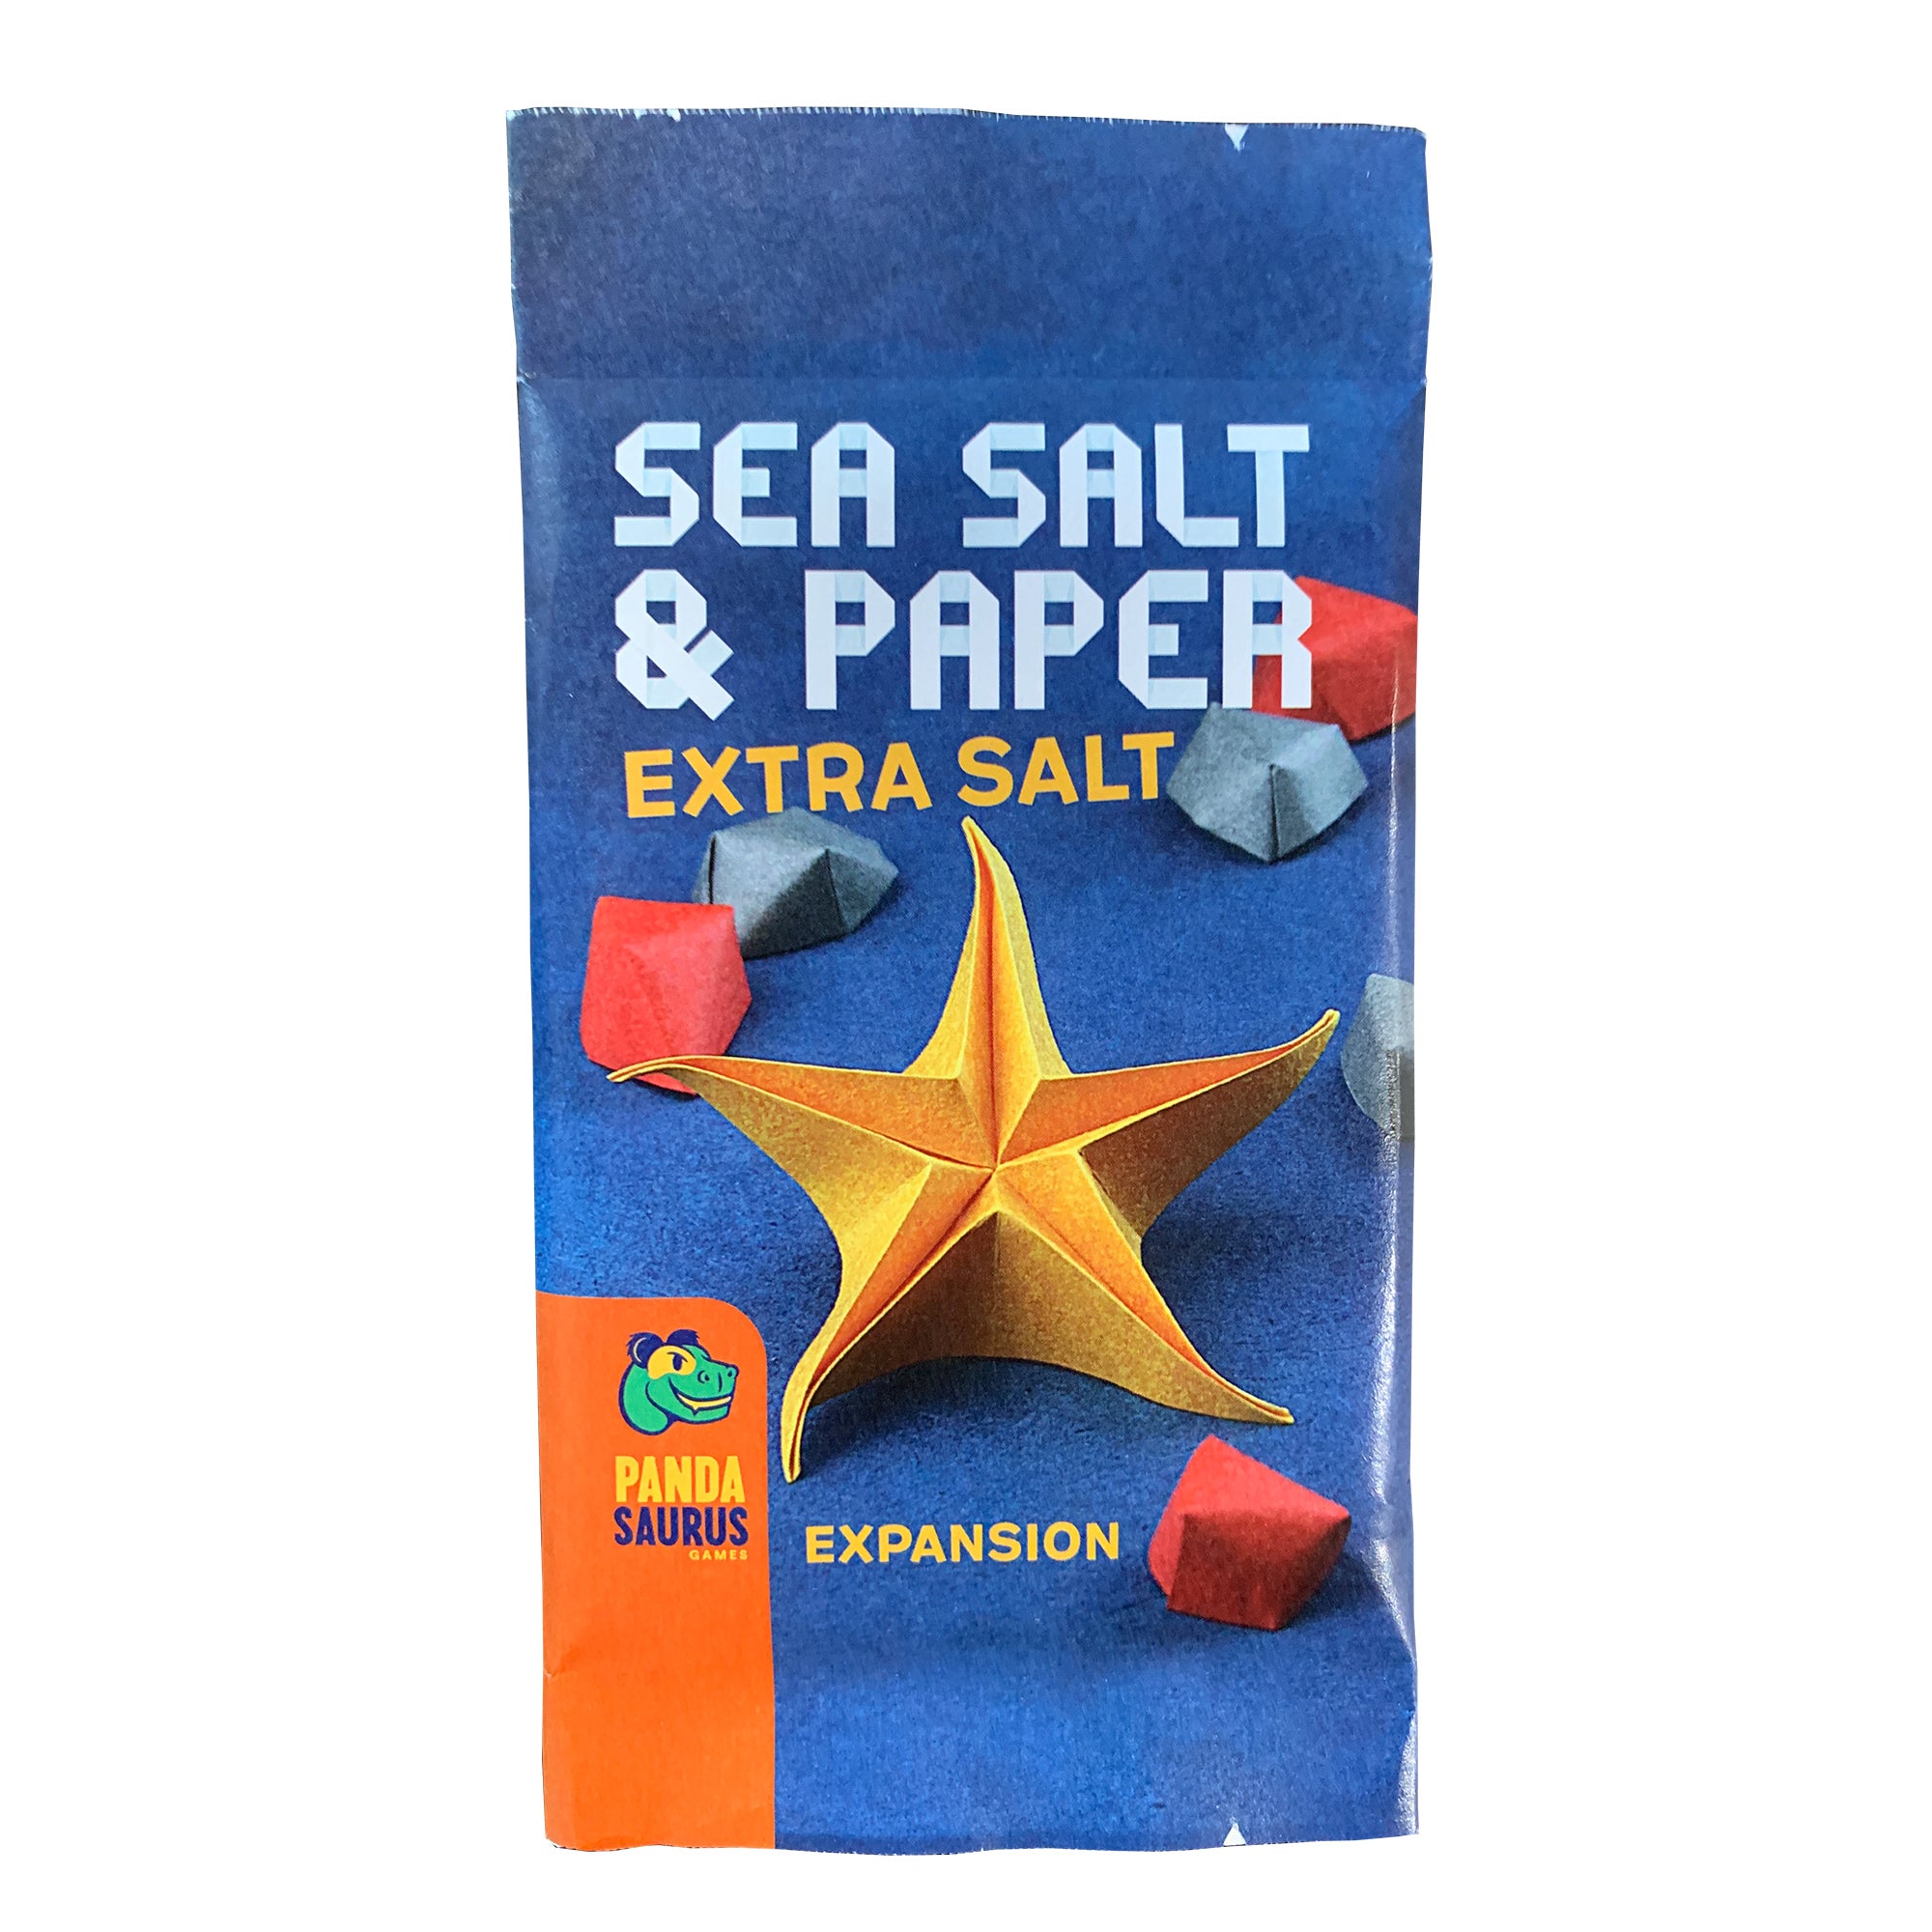 Sea Salt & Paper: Extra Salt Expansion, Board Games